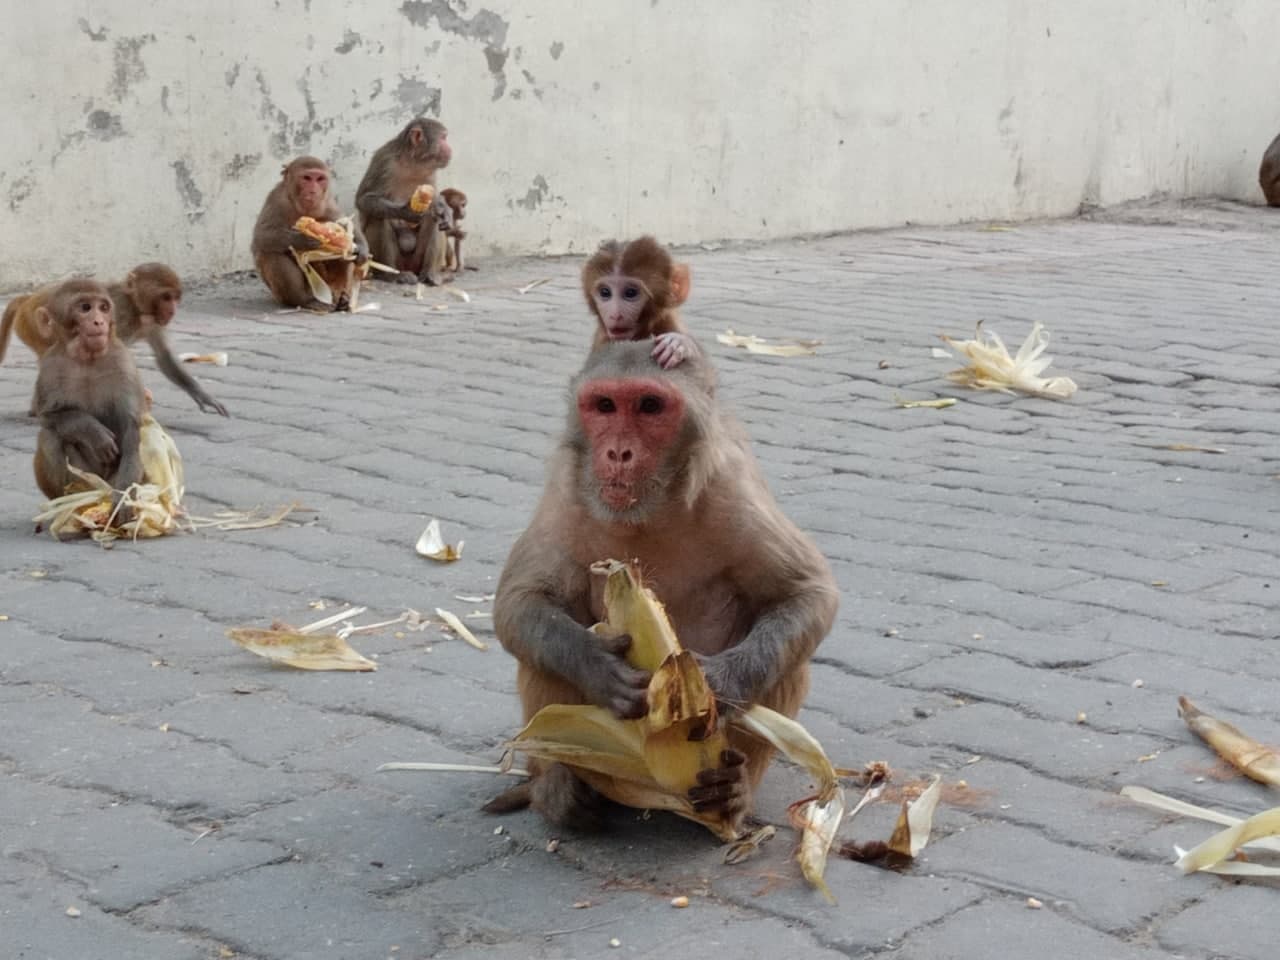 Monkey Care